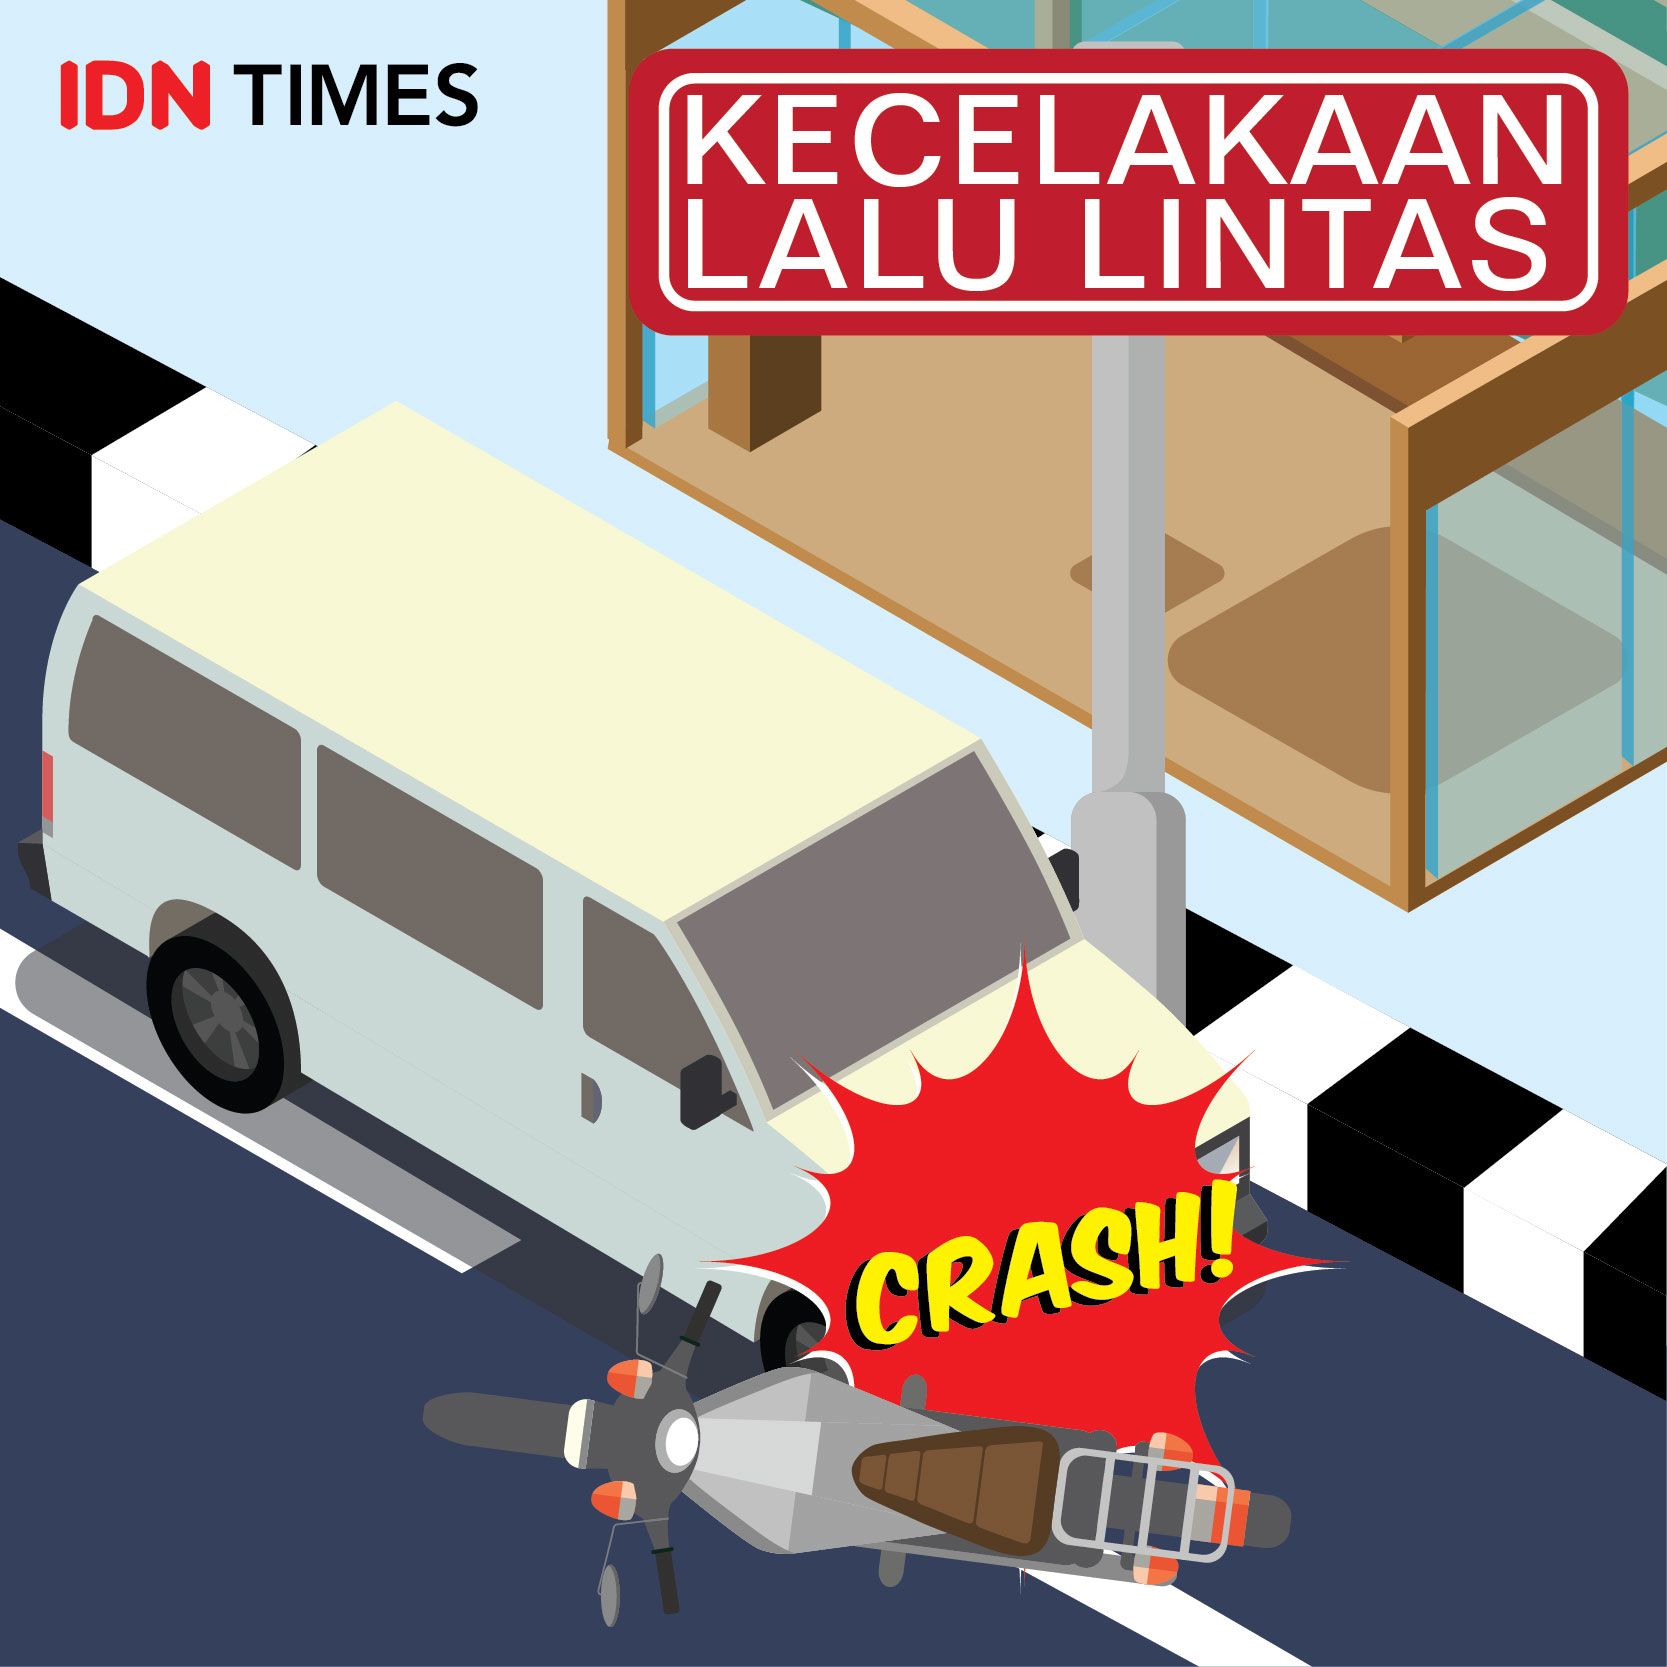 Kecelakaan Maut Bus Mercedes dan Motor, Pelajar Bandar Lampung Meninggal